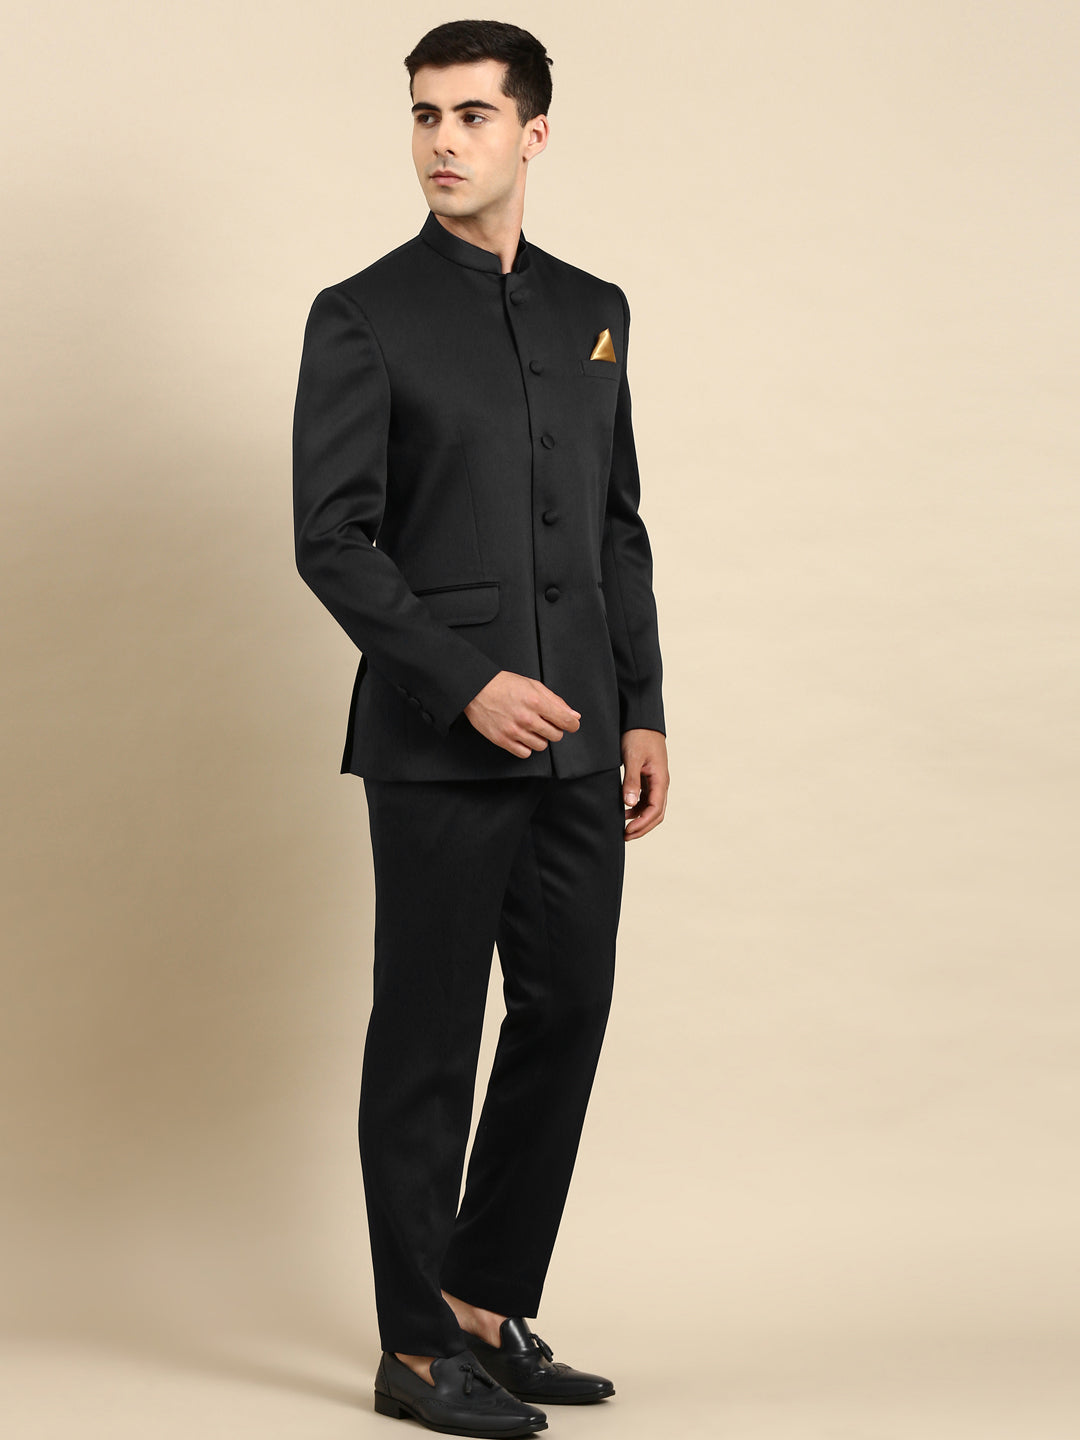 Black Bandhgala Suit